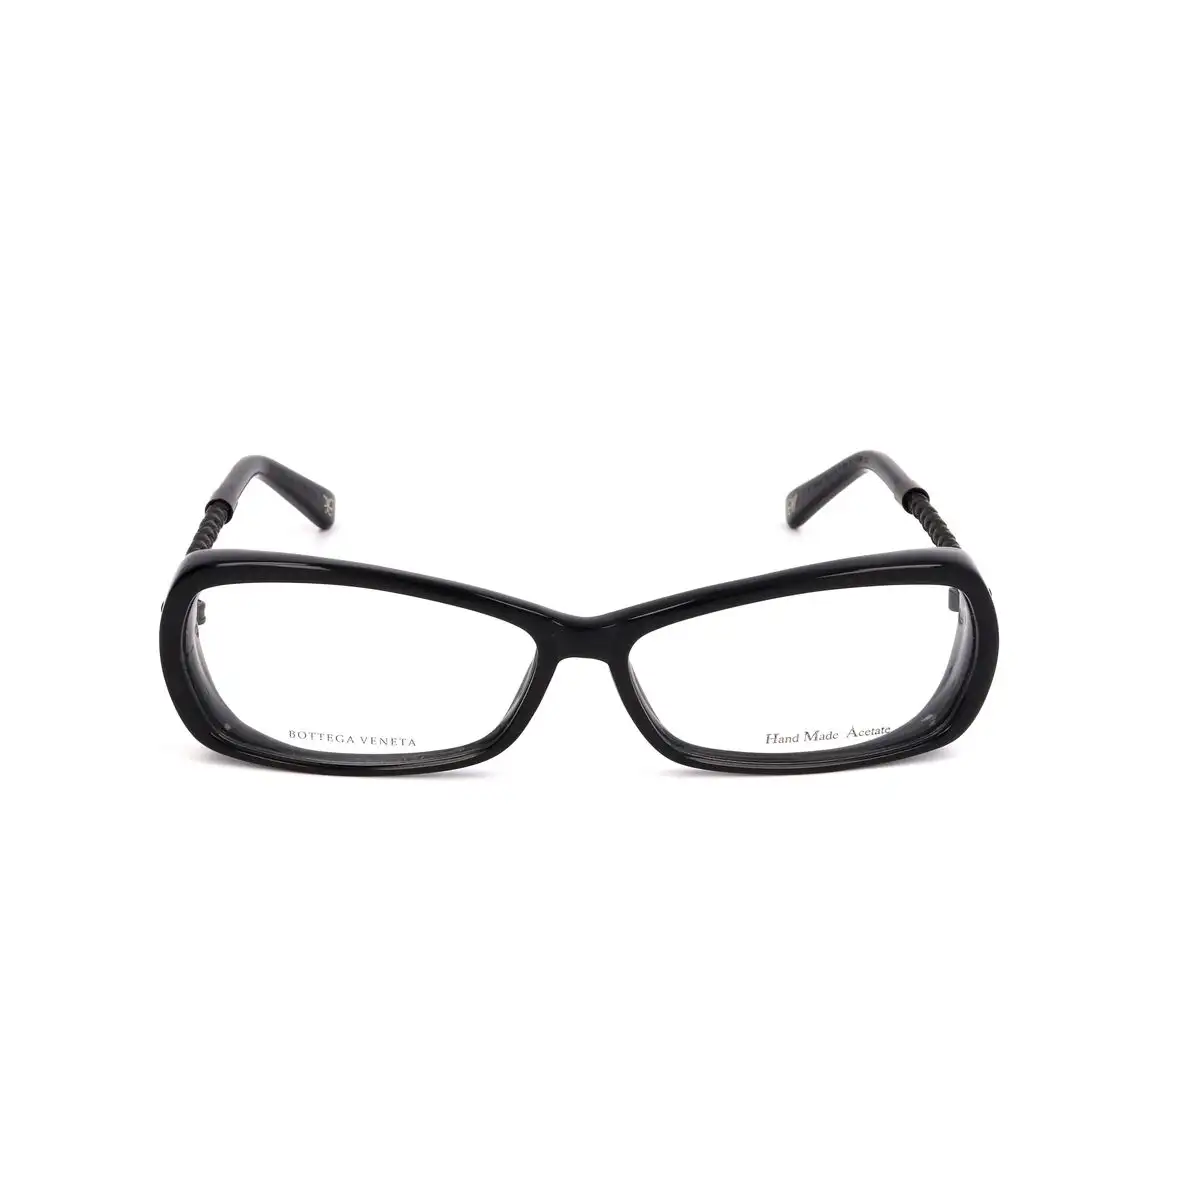 Monture de lunettes femme bottega veneta bv 97 qm noir_5642. DIAYTAR SENEGAL - Votre Passage vers l'Éclat et la Beauté. Explorez notre boutique en ligne et trouvez des produits qui subliment votre apparence et votre espace.